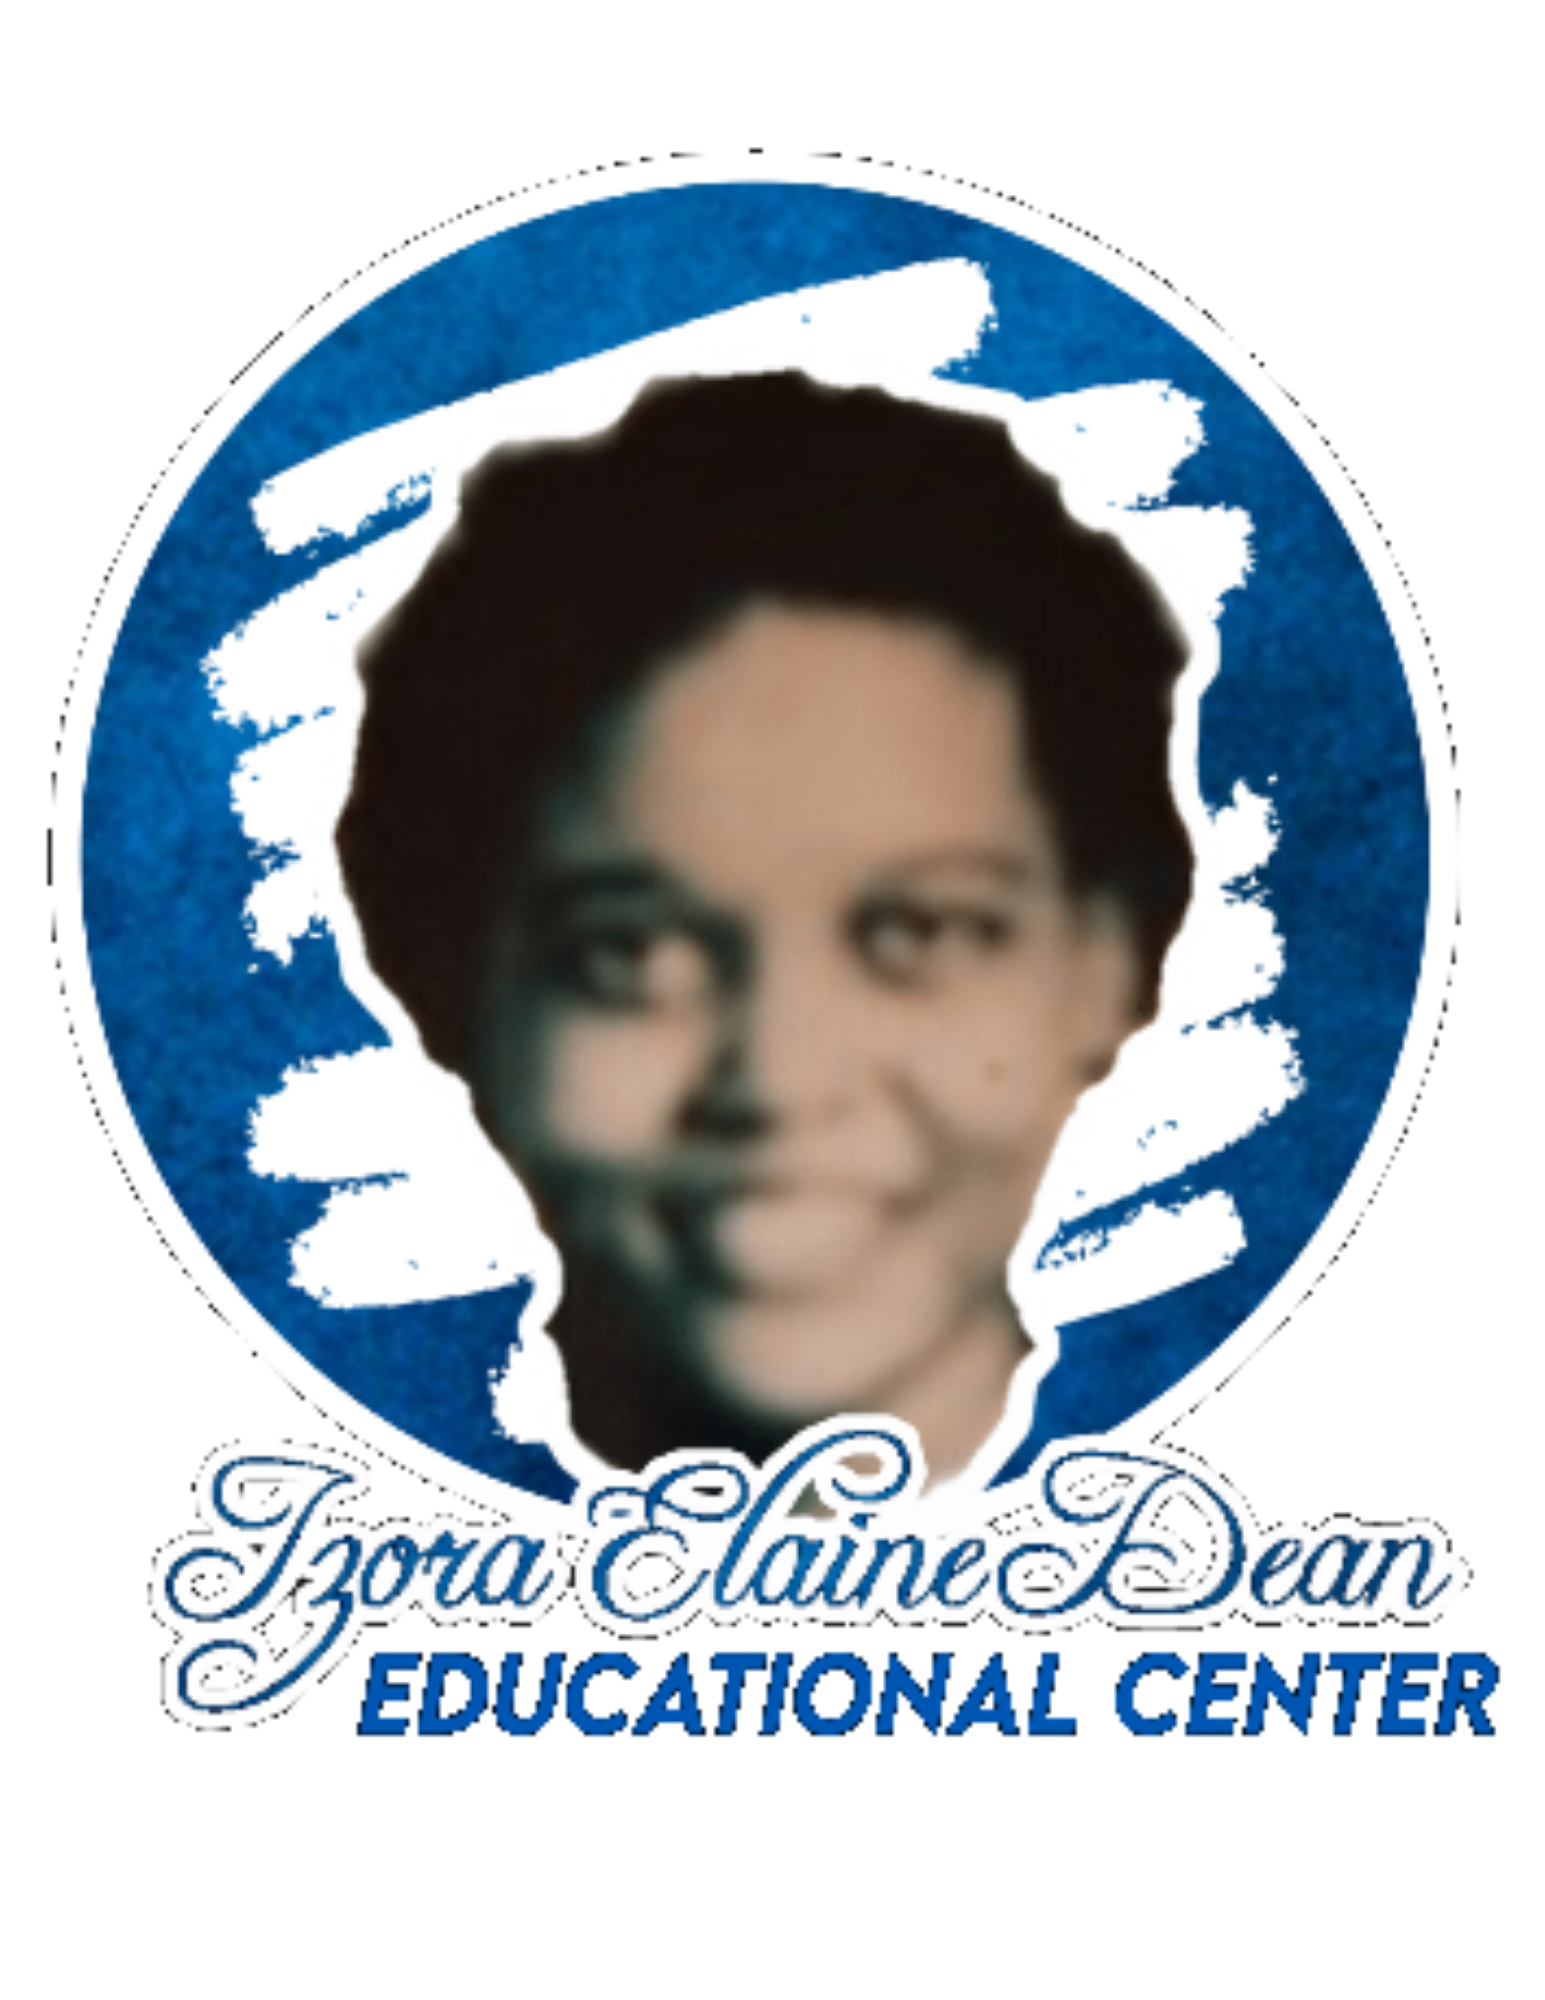 Izora Elaine Dean Educational Center logo